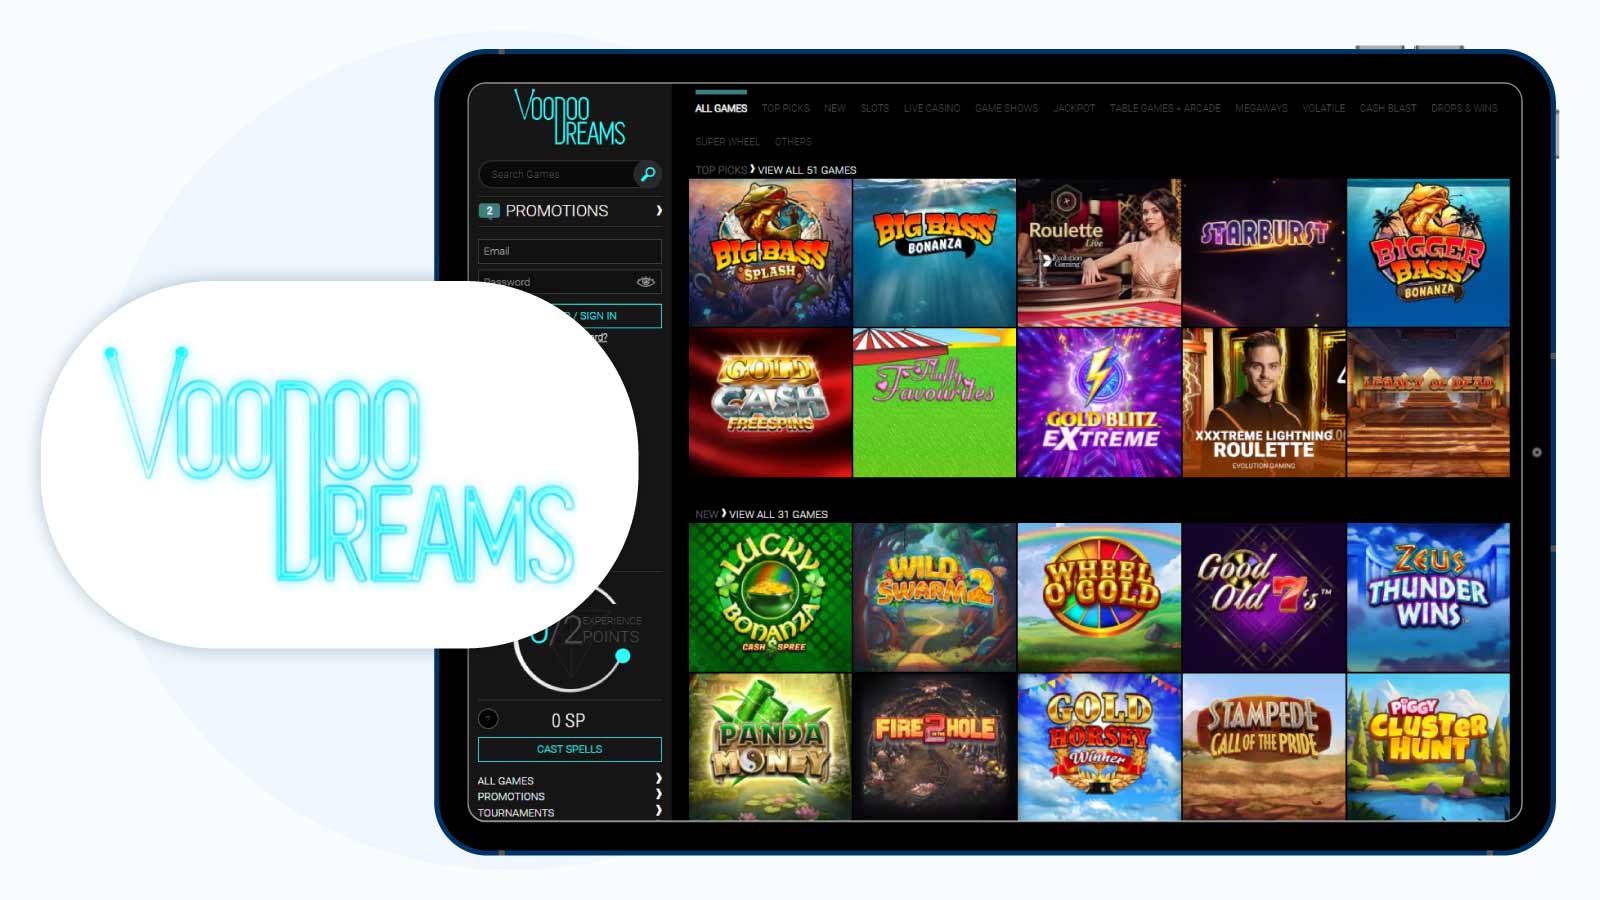 Voodoo Dreams – Best PayPal Casino with 100% Bonus